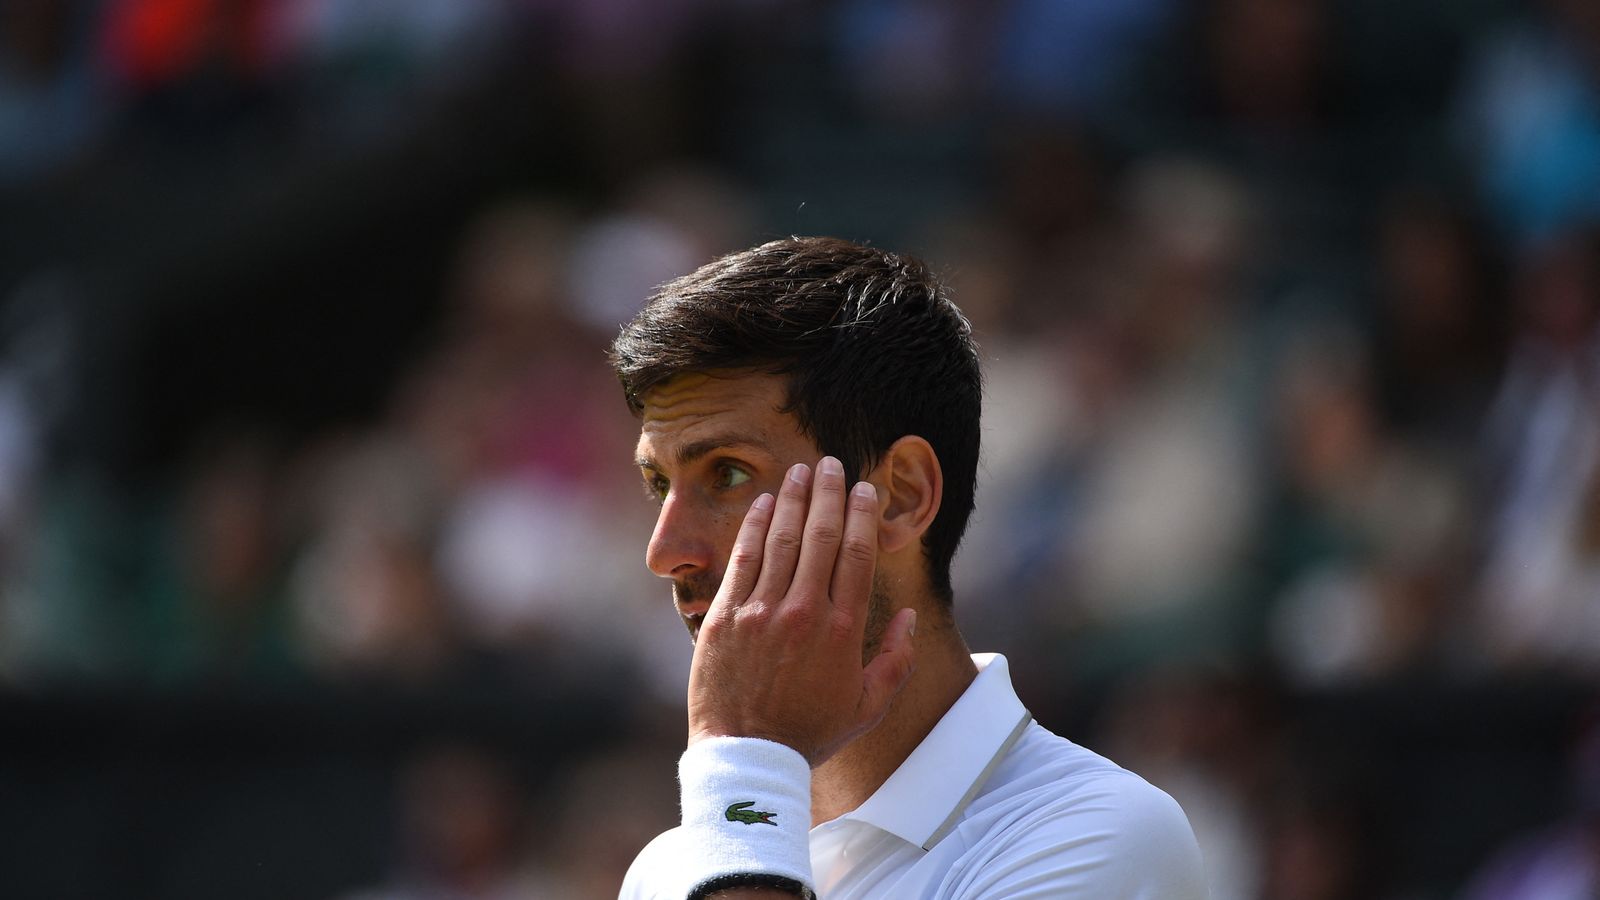 Wimbledon Novak Djokovic durch Fall Gimelstob in Bedrängnis Tennis News Sky Sport